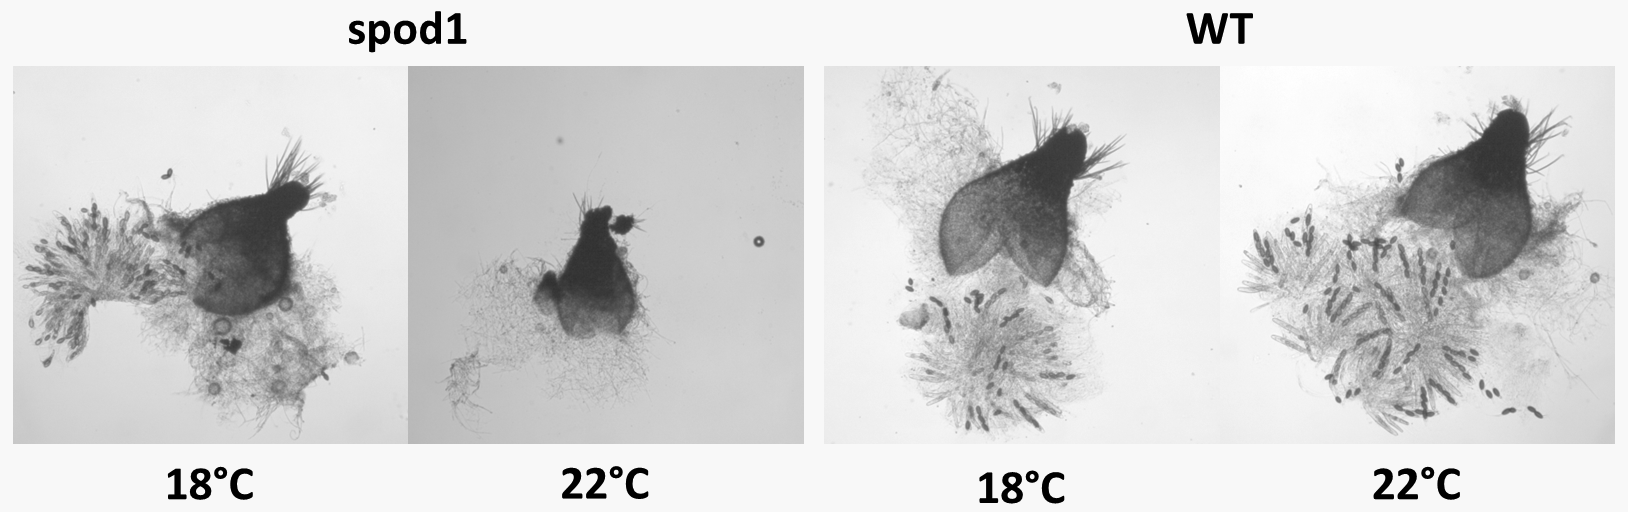 chez le champignon Podospora anserina, le mutant spod1 est thermosensible pour la production d'ascospores.